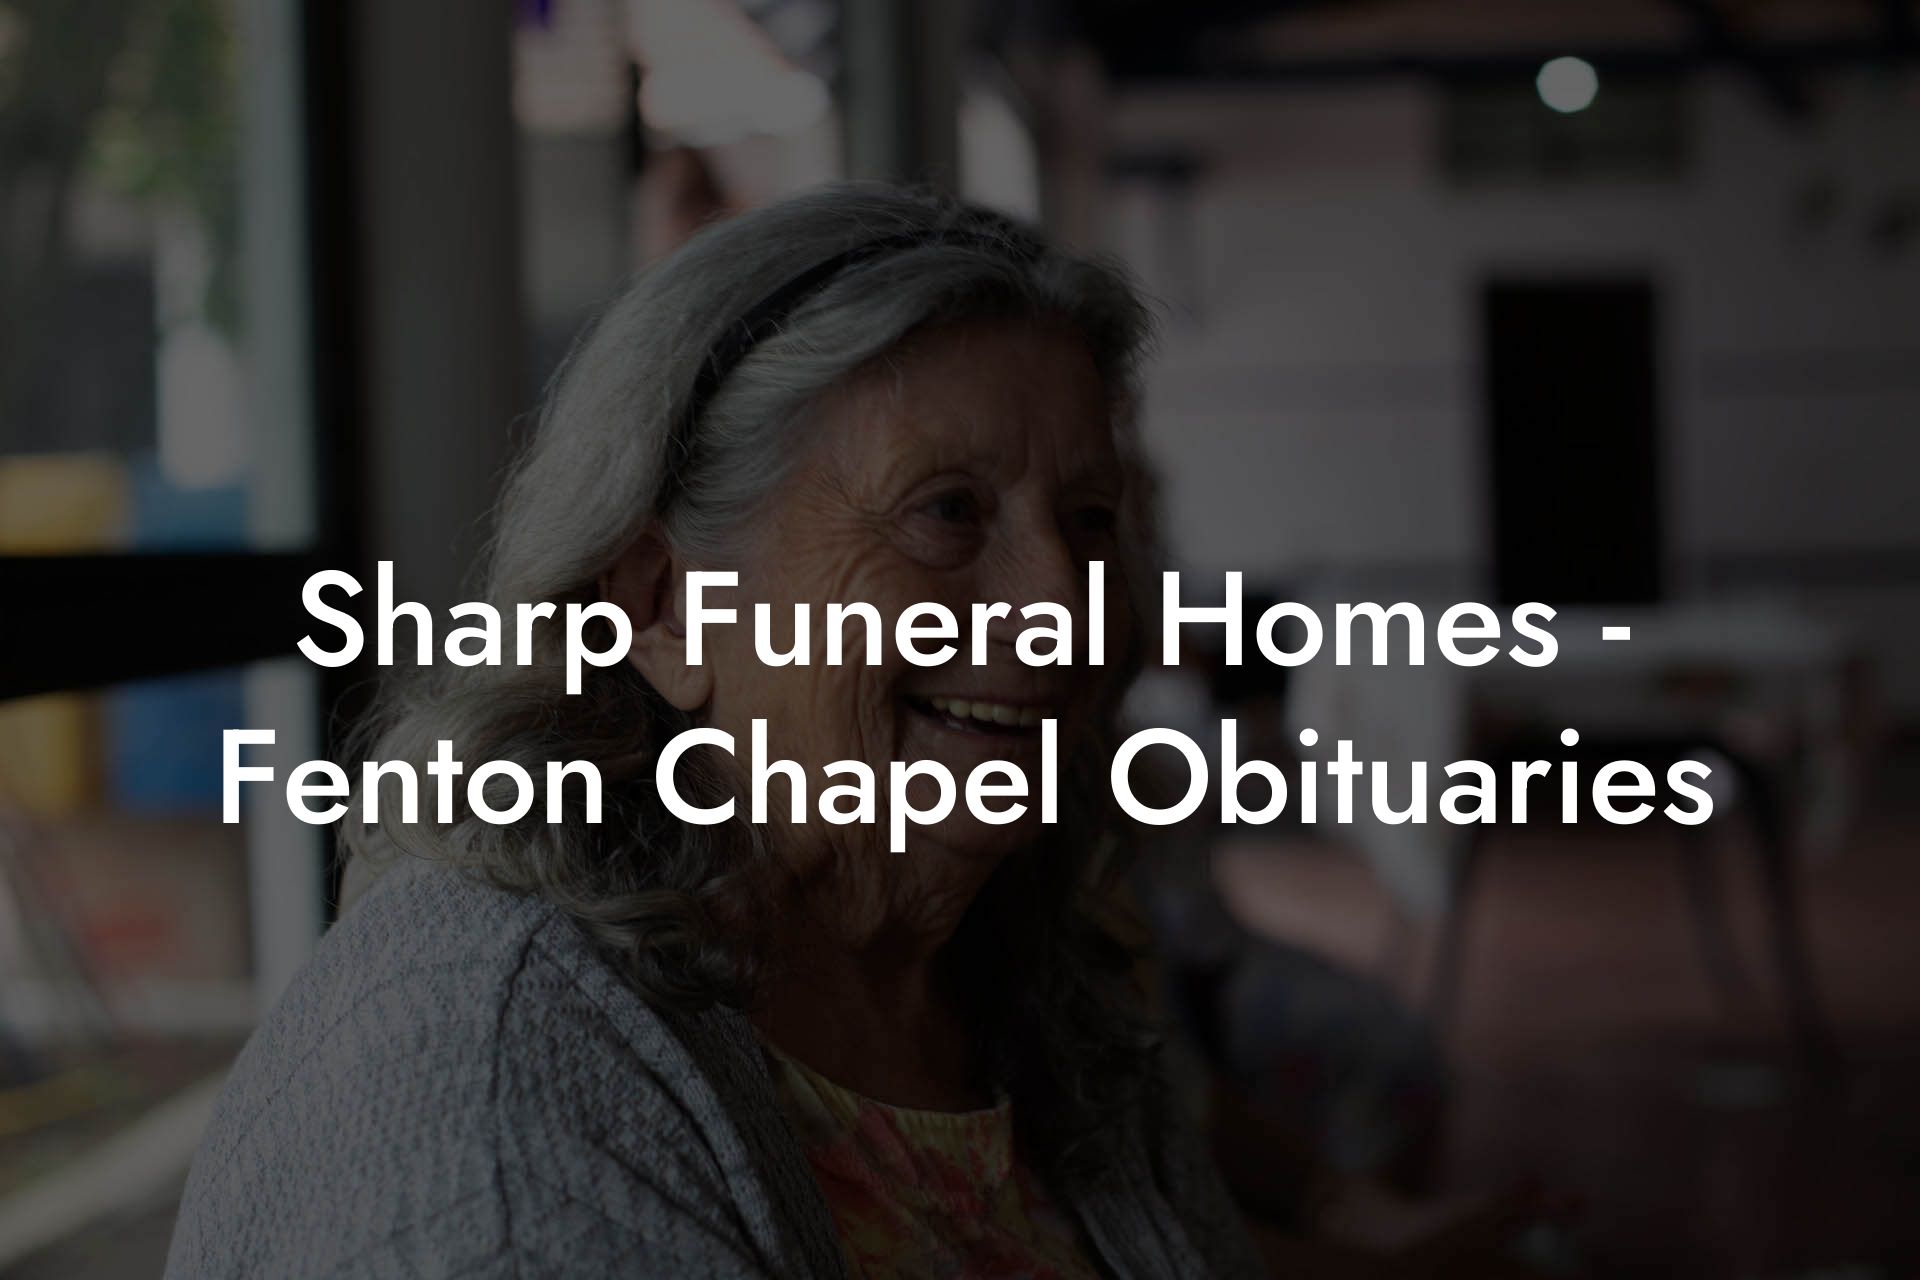 Sharp Funeral Homes, Fenton Chapel Obituaries